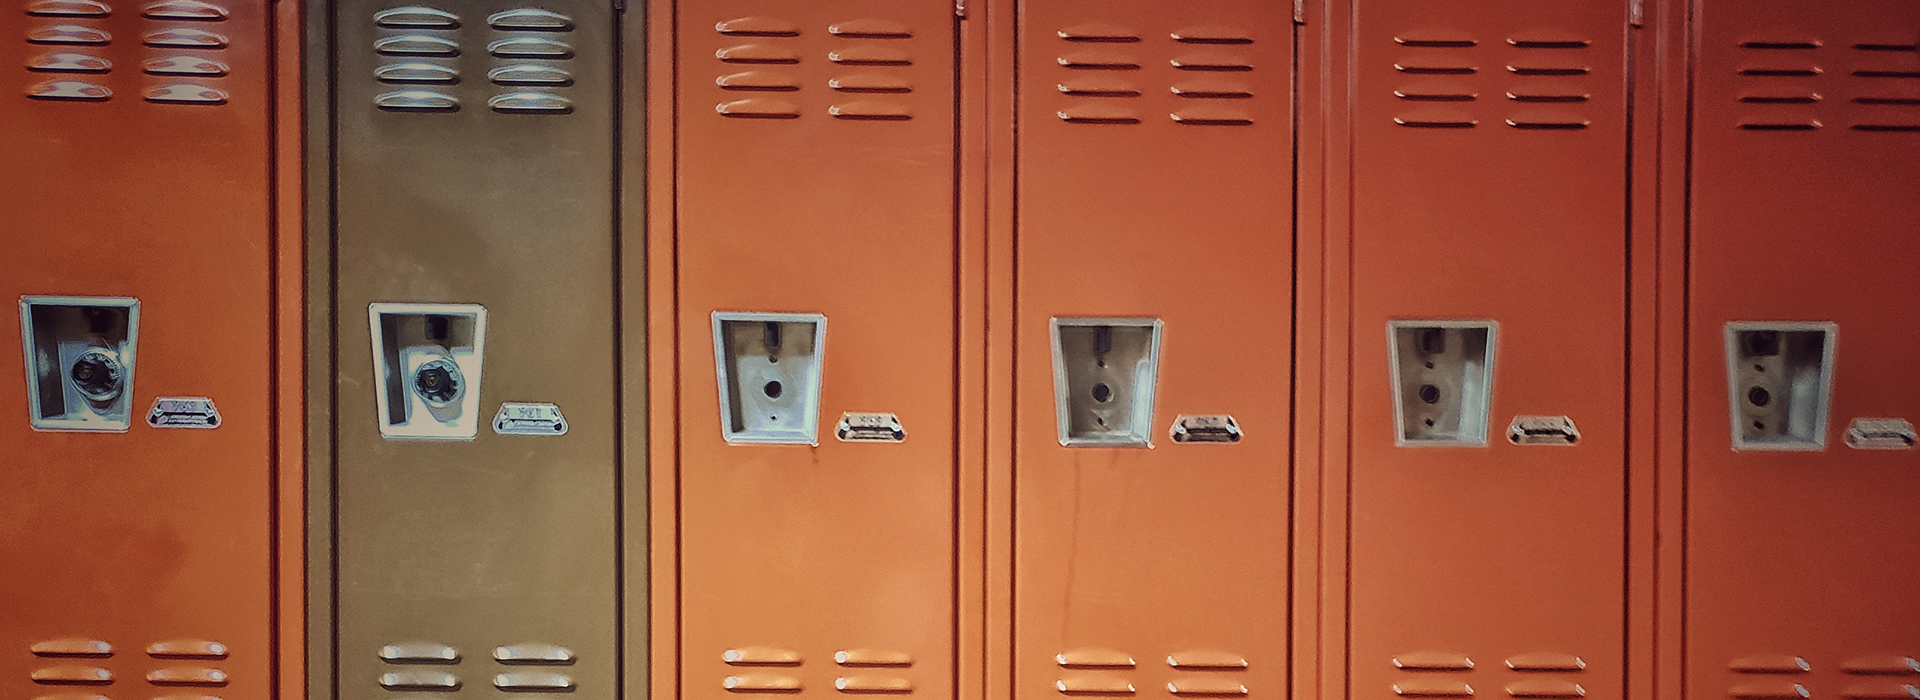 a row of metal lockers—five rusty orange lockers and one brown locker